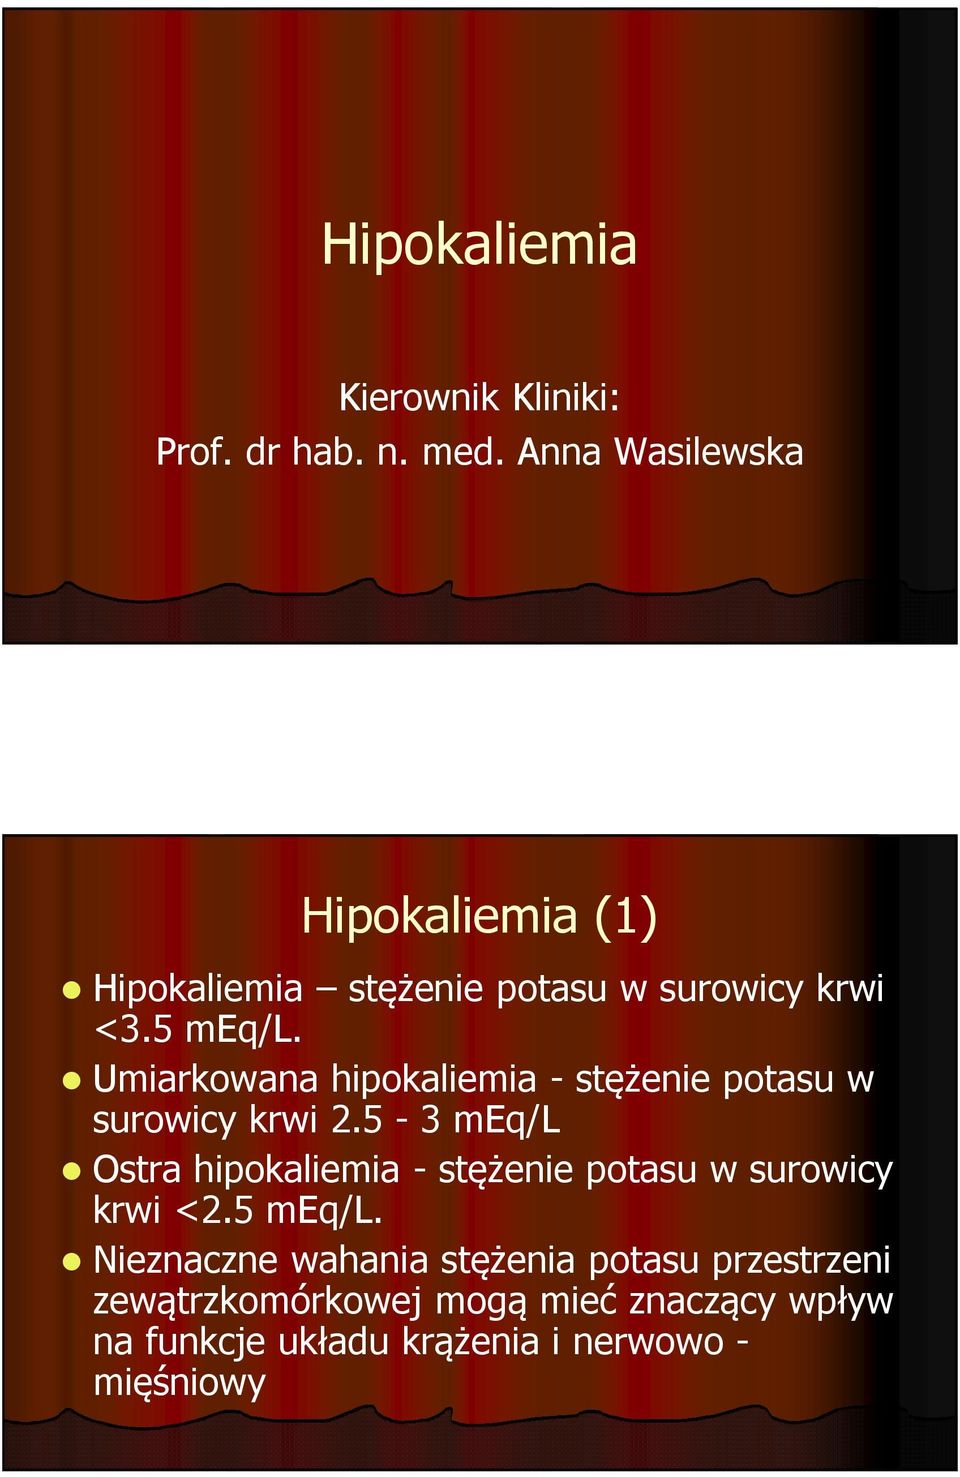 Umiarkowana hipokaliemia -stężenie potasu w surowicy krwi 2.